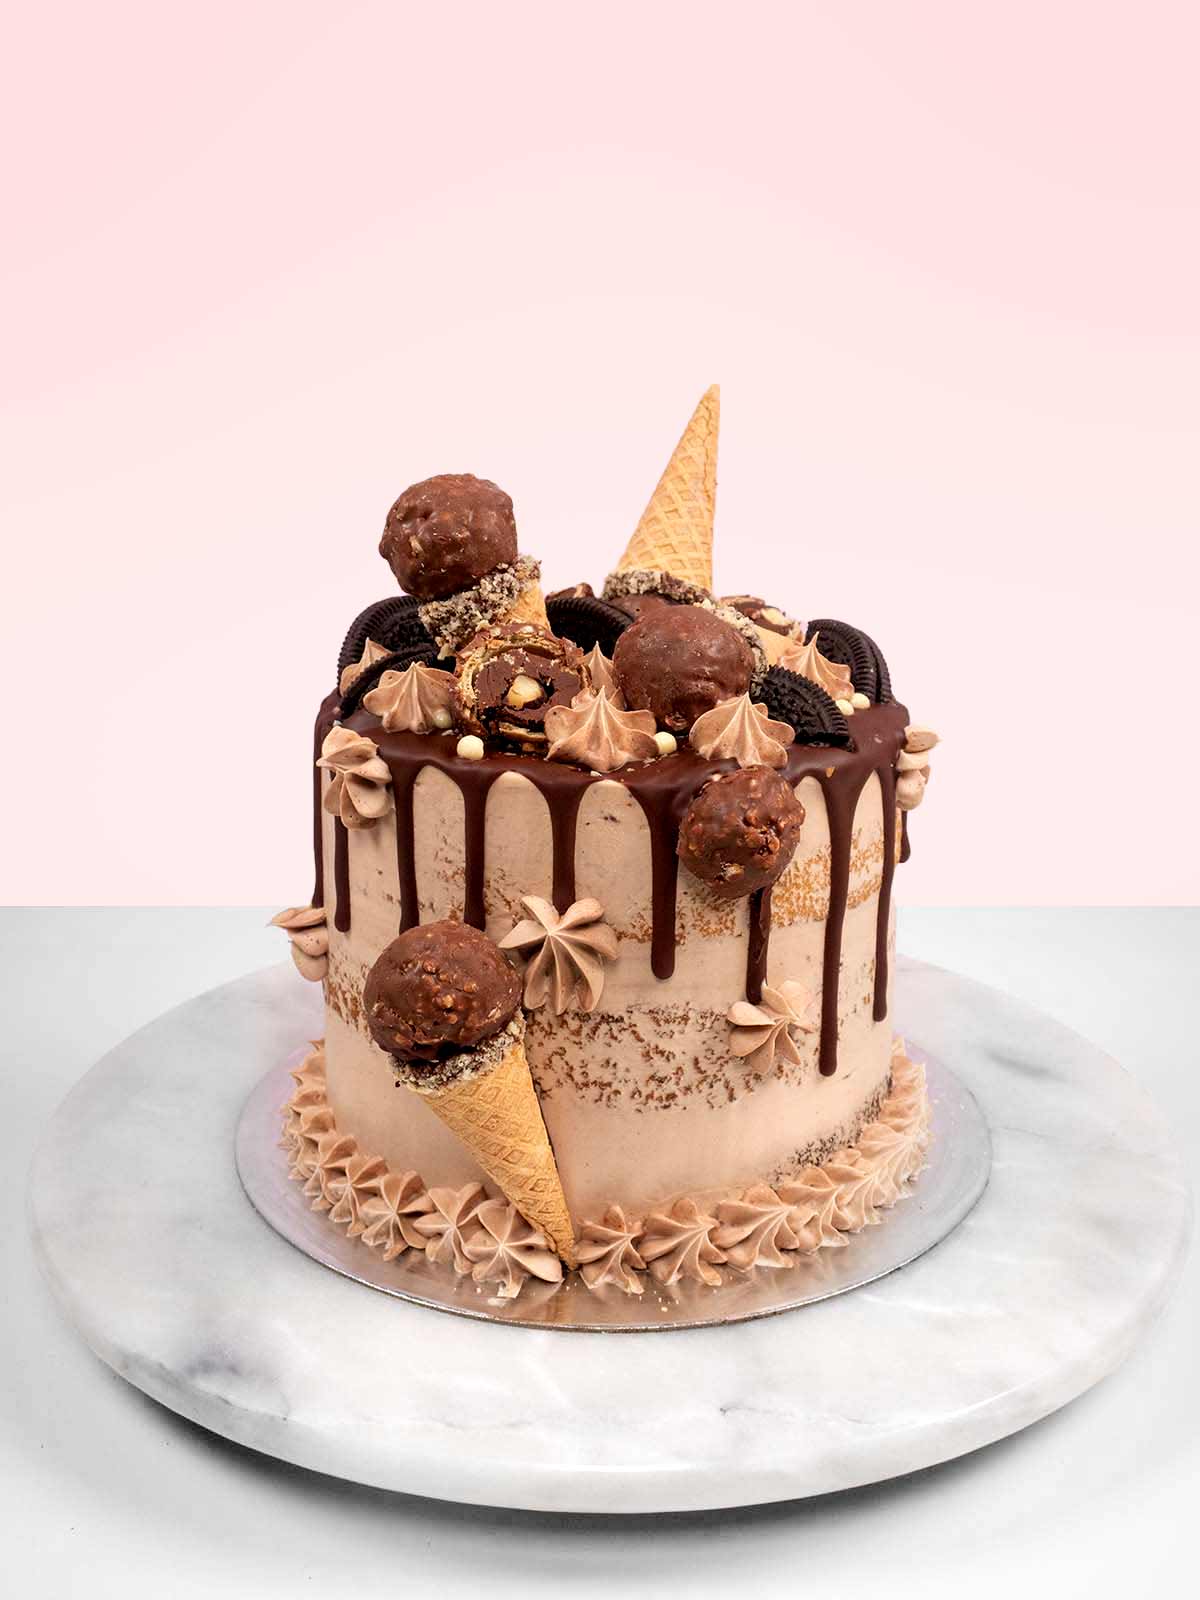 65 Dada ideas | cupcake cakes, cake decorating, celebration cakes